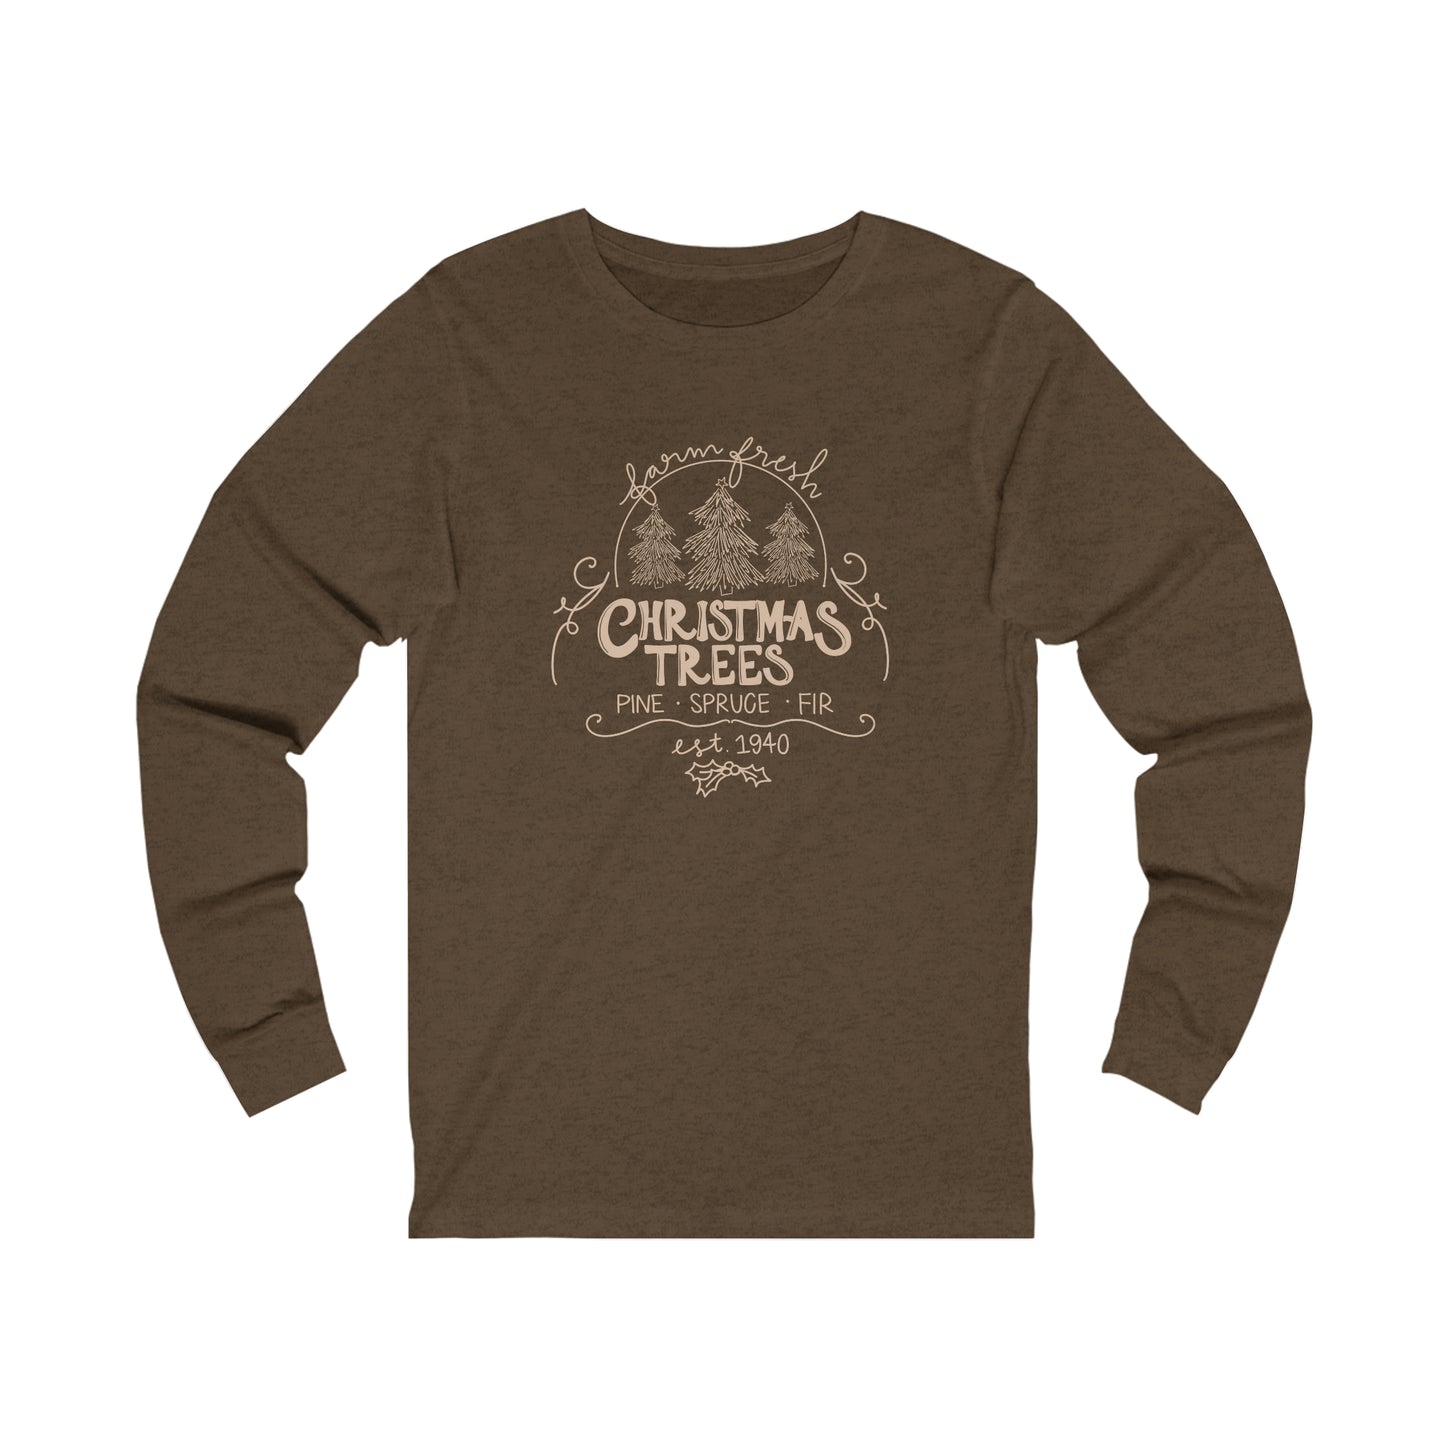 Tree Farm Sweatshirt Long Sleeve Tee